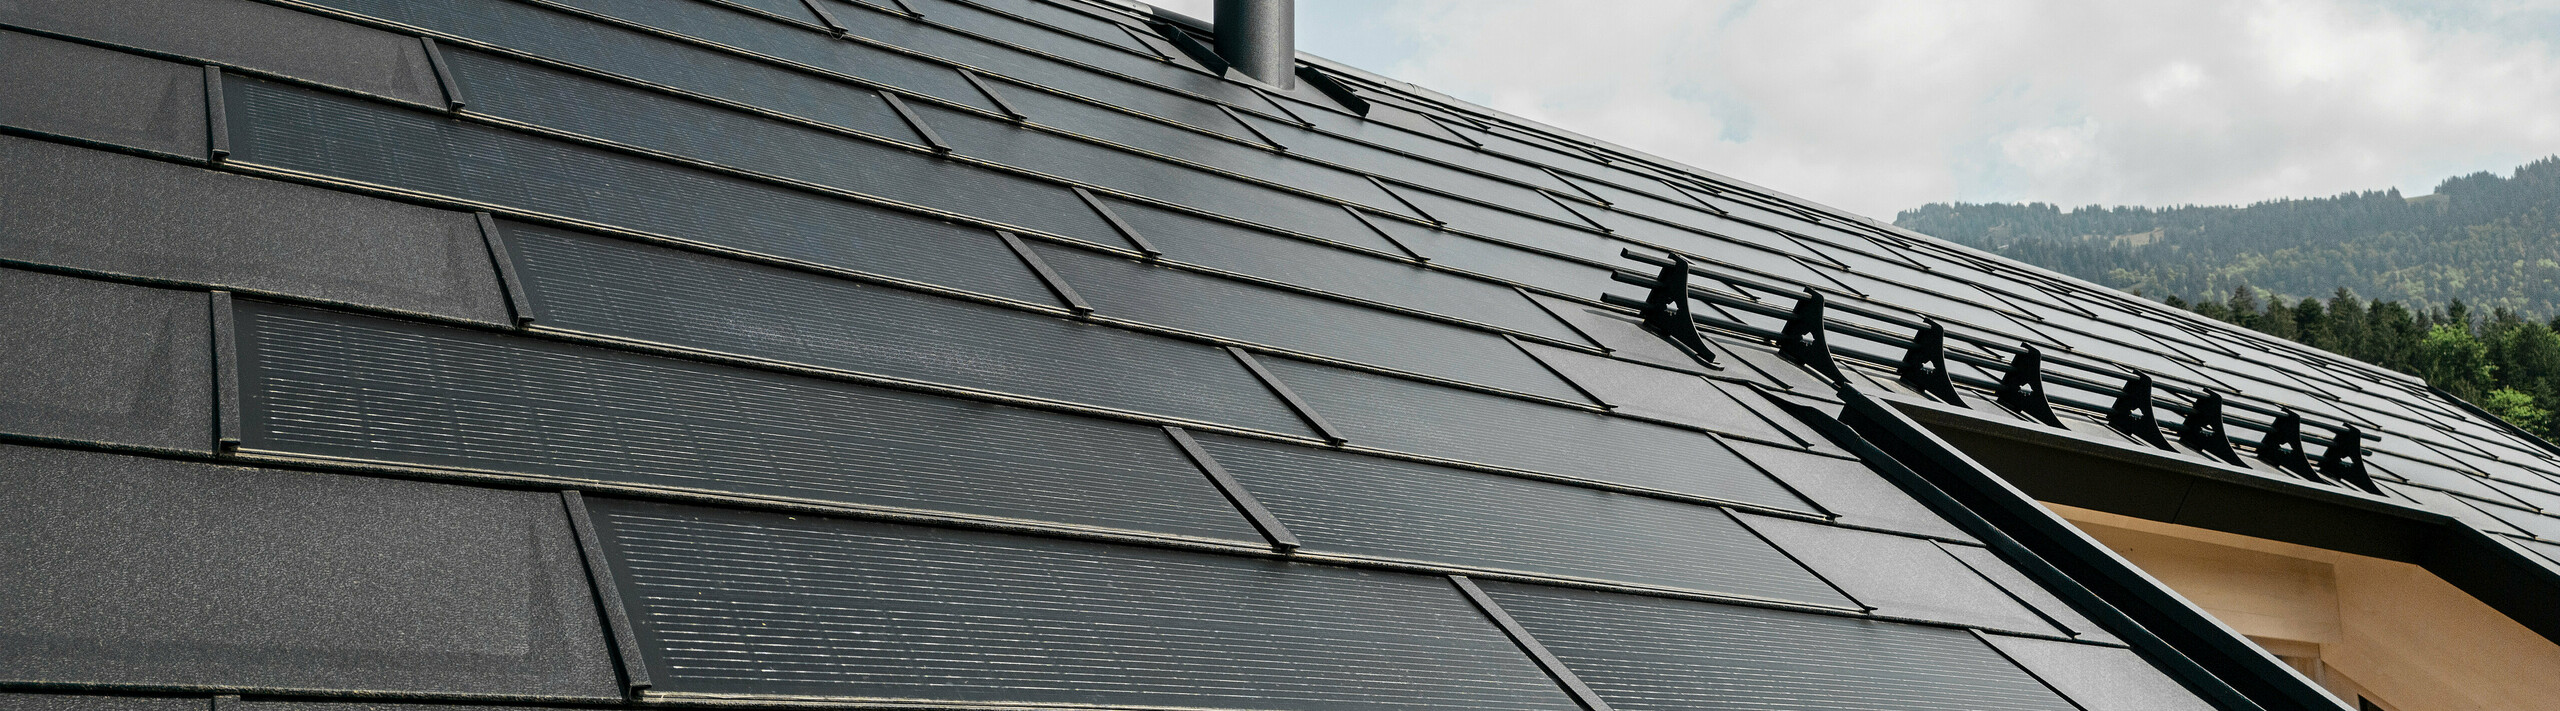 Nahaufnahme der effizienten PREFA Solardachplatte, welche sich nahtlos integriert in das schwarze Dach aus robusten PREFA Dachplatten R.16. Die Kombination aus nachhaltiger Energiegewinnung und langlebigem Aluminiumdach bietet eine ökologische und ästhetische Dachlösung, die sich harmonisch in die natürliche Landschaft einfügt.